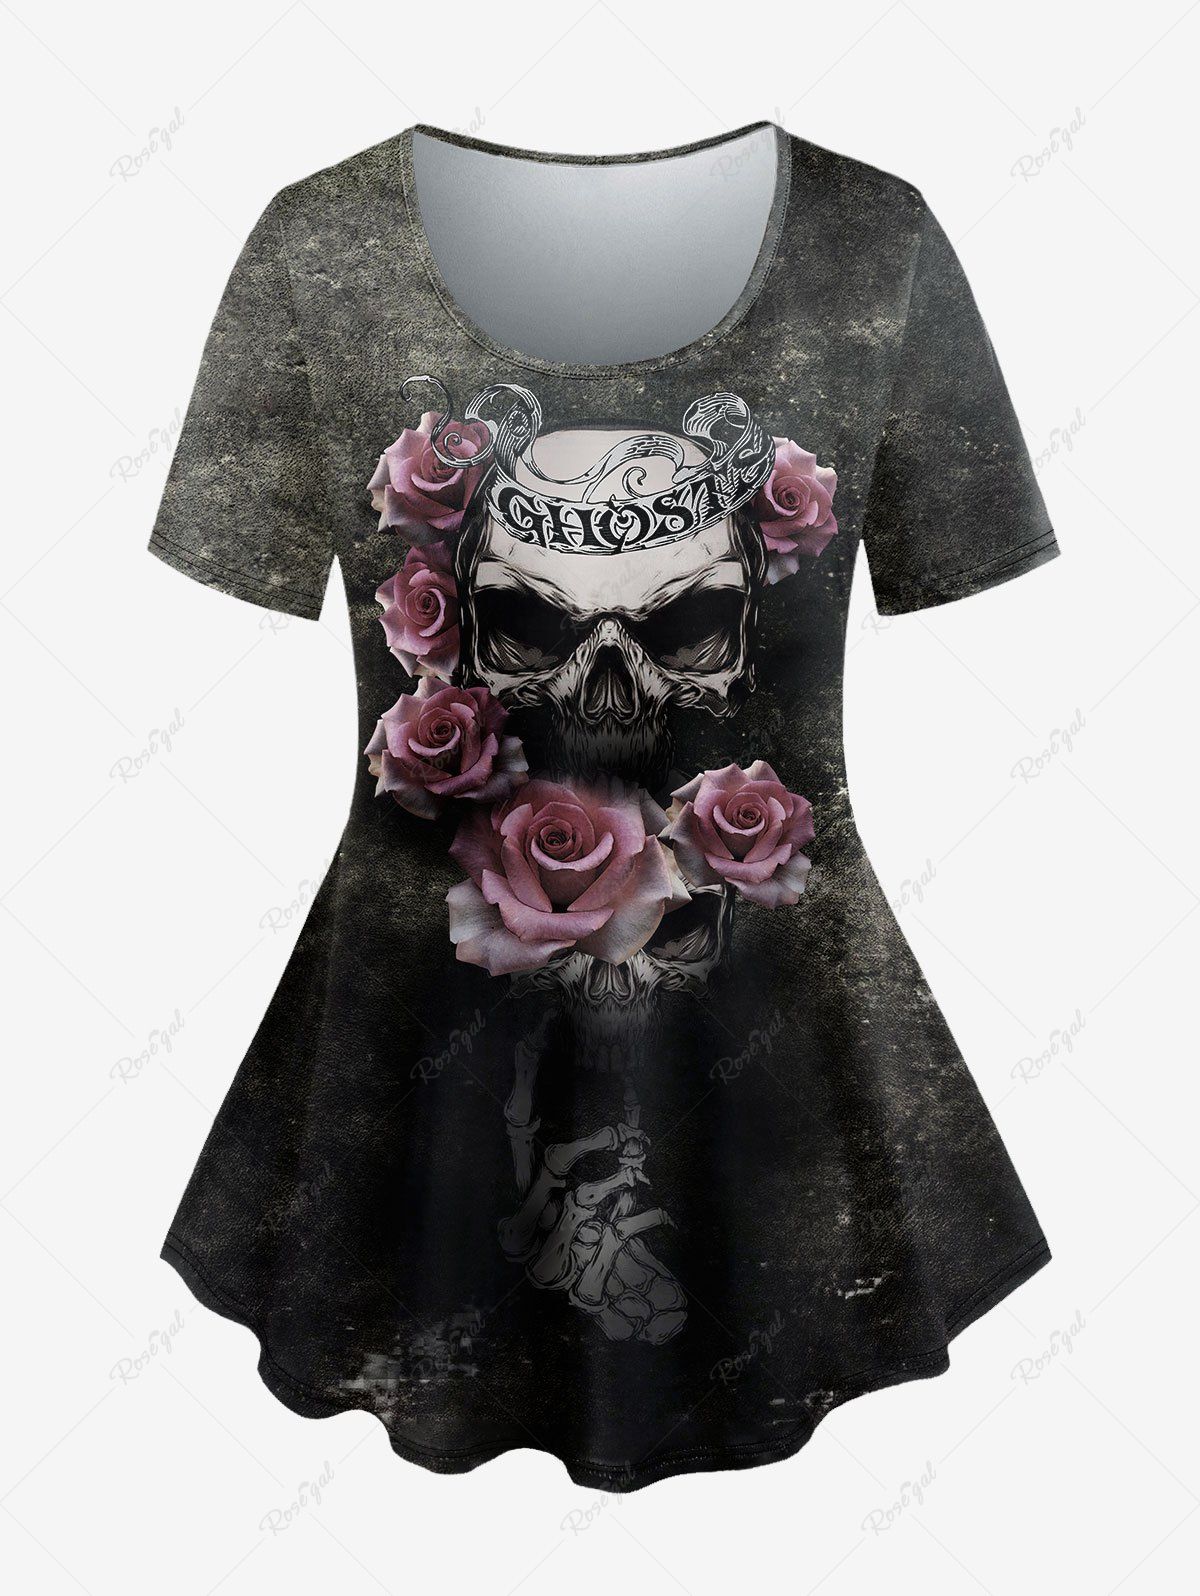 T-shirt Gothique Rétro Crâne Rose Imprimées Noir 3X | US 22-24